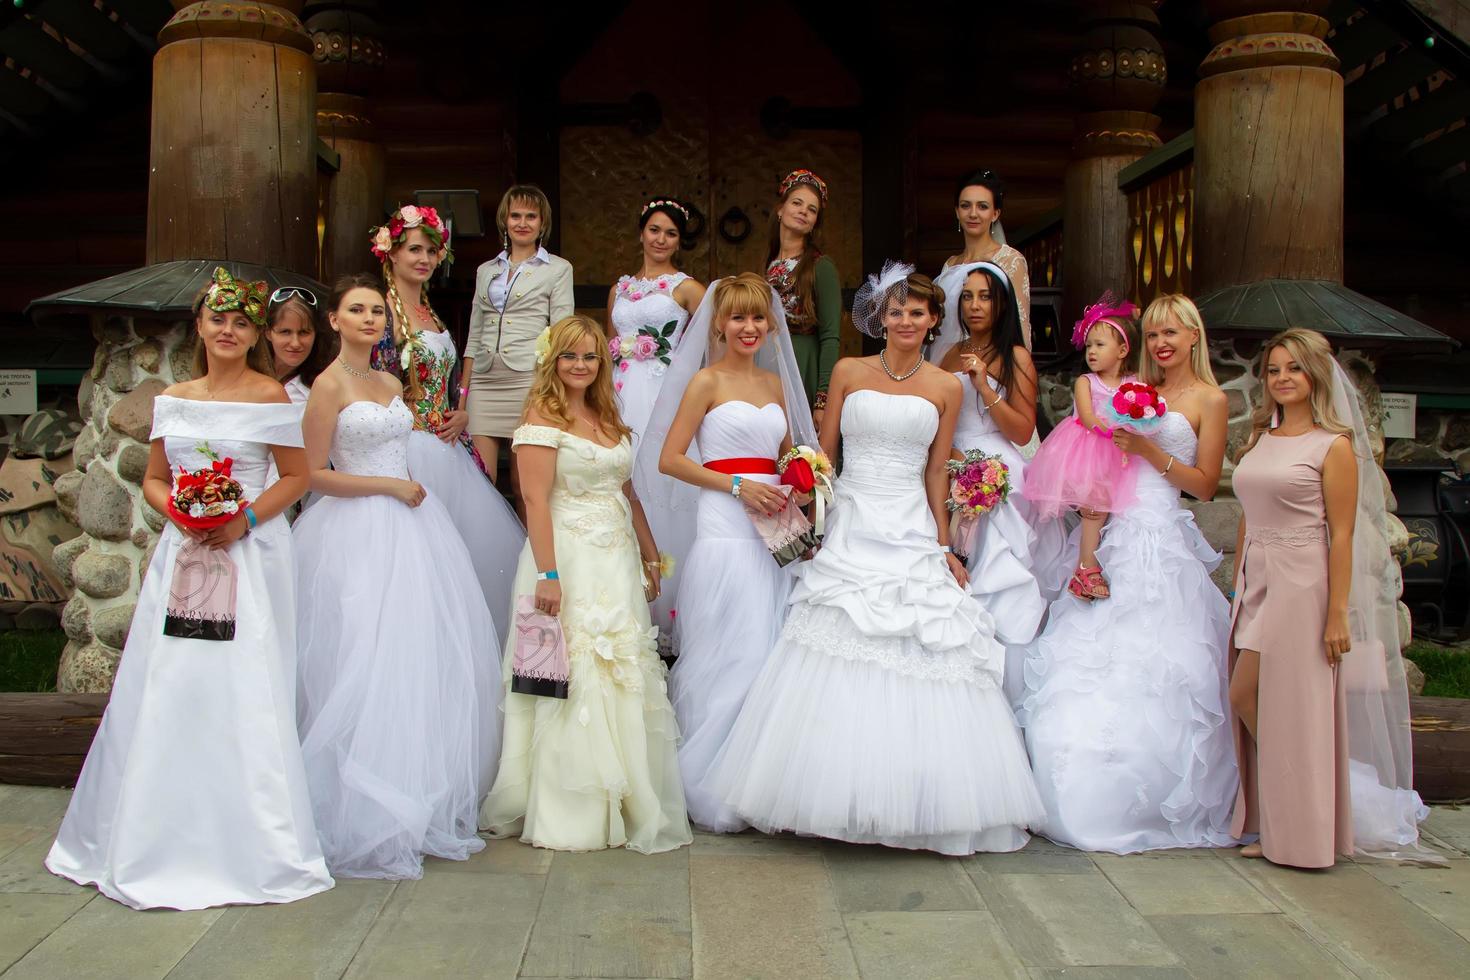 el desfile de novias un lote de mujer en Boda vestidos. un grupo de novias foto